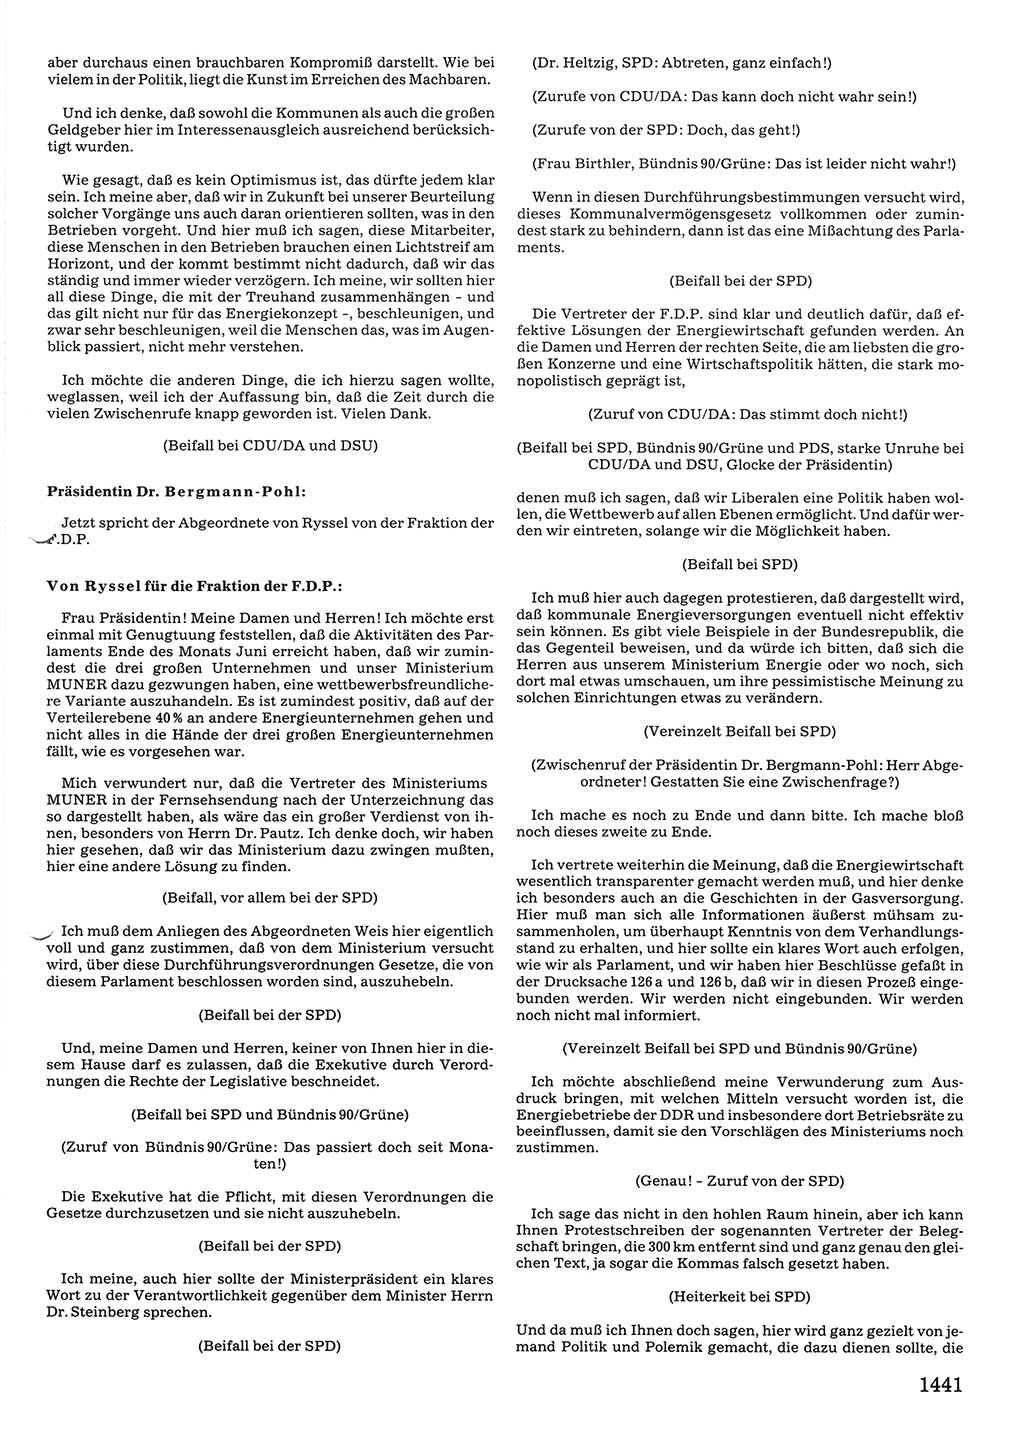 Tagungen der Volkskammer (VK) der Deutschen Demokratischen Republik (DDR), 10. Wahlperiode 1990, Seite 1441 (VK. DDR 10. WP. 1990, Prot. Tg. 1-38, 5.4.-2.10.1990, S. 1441)